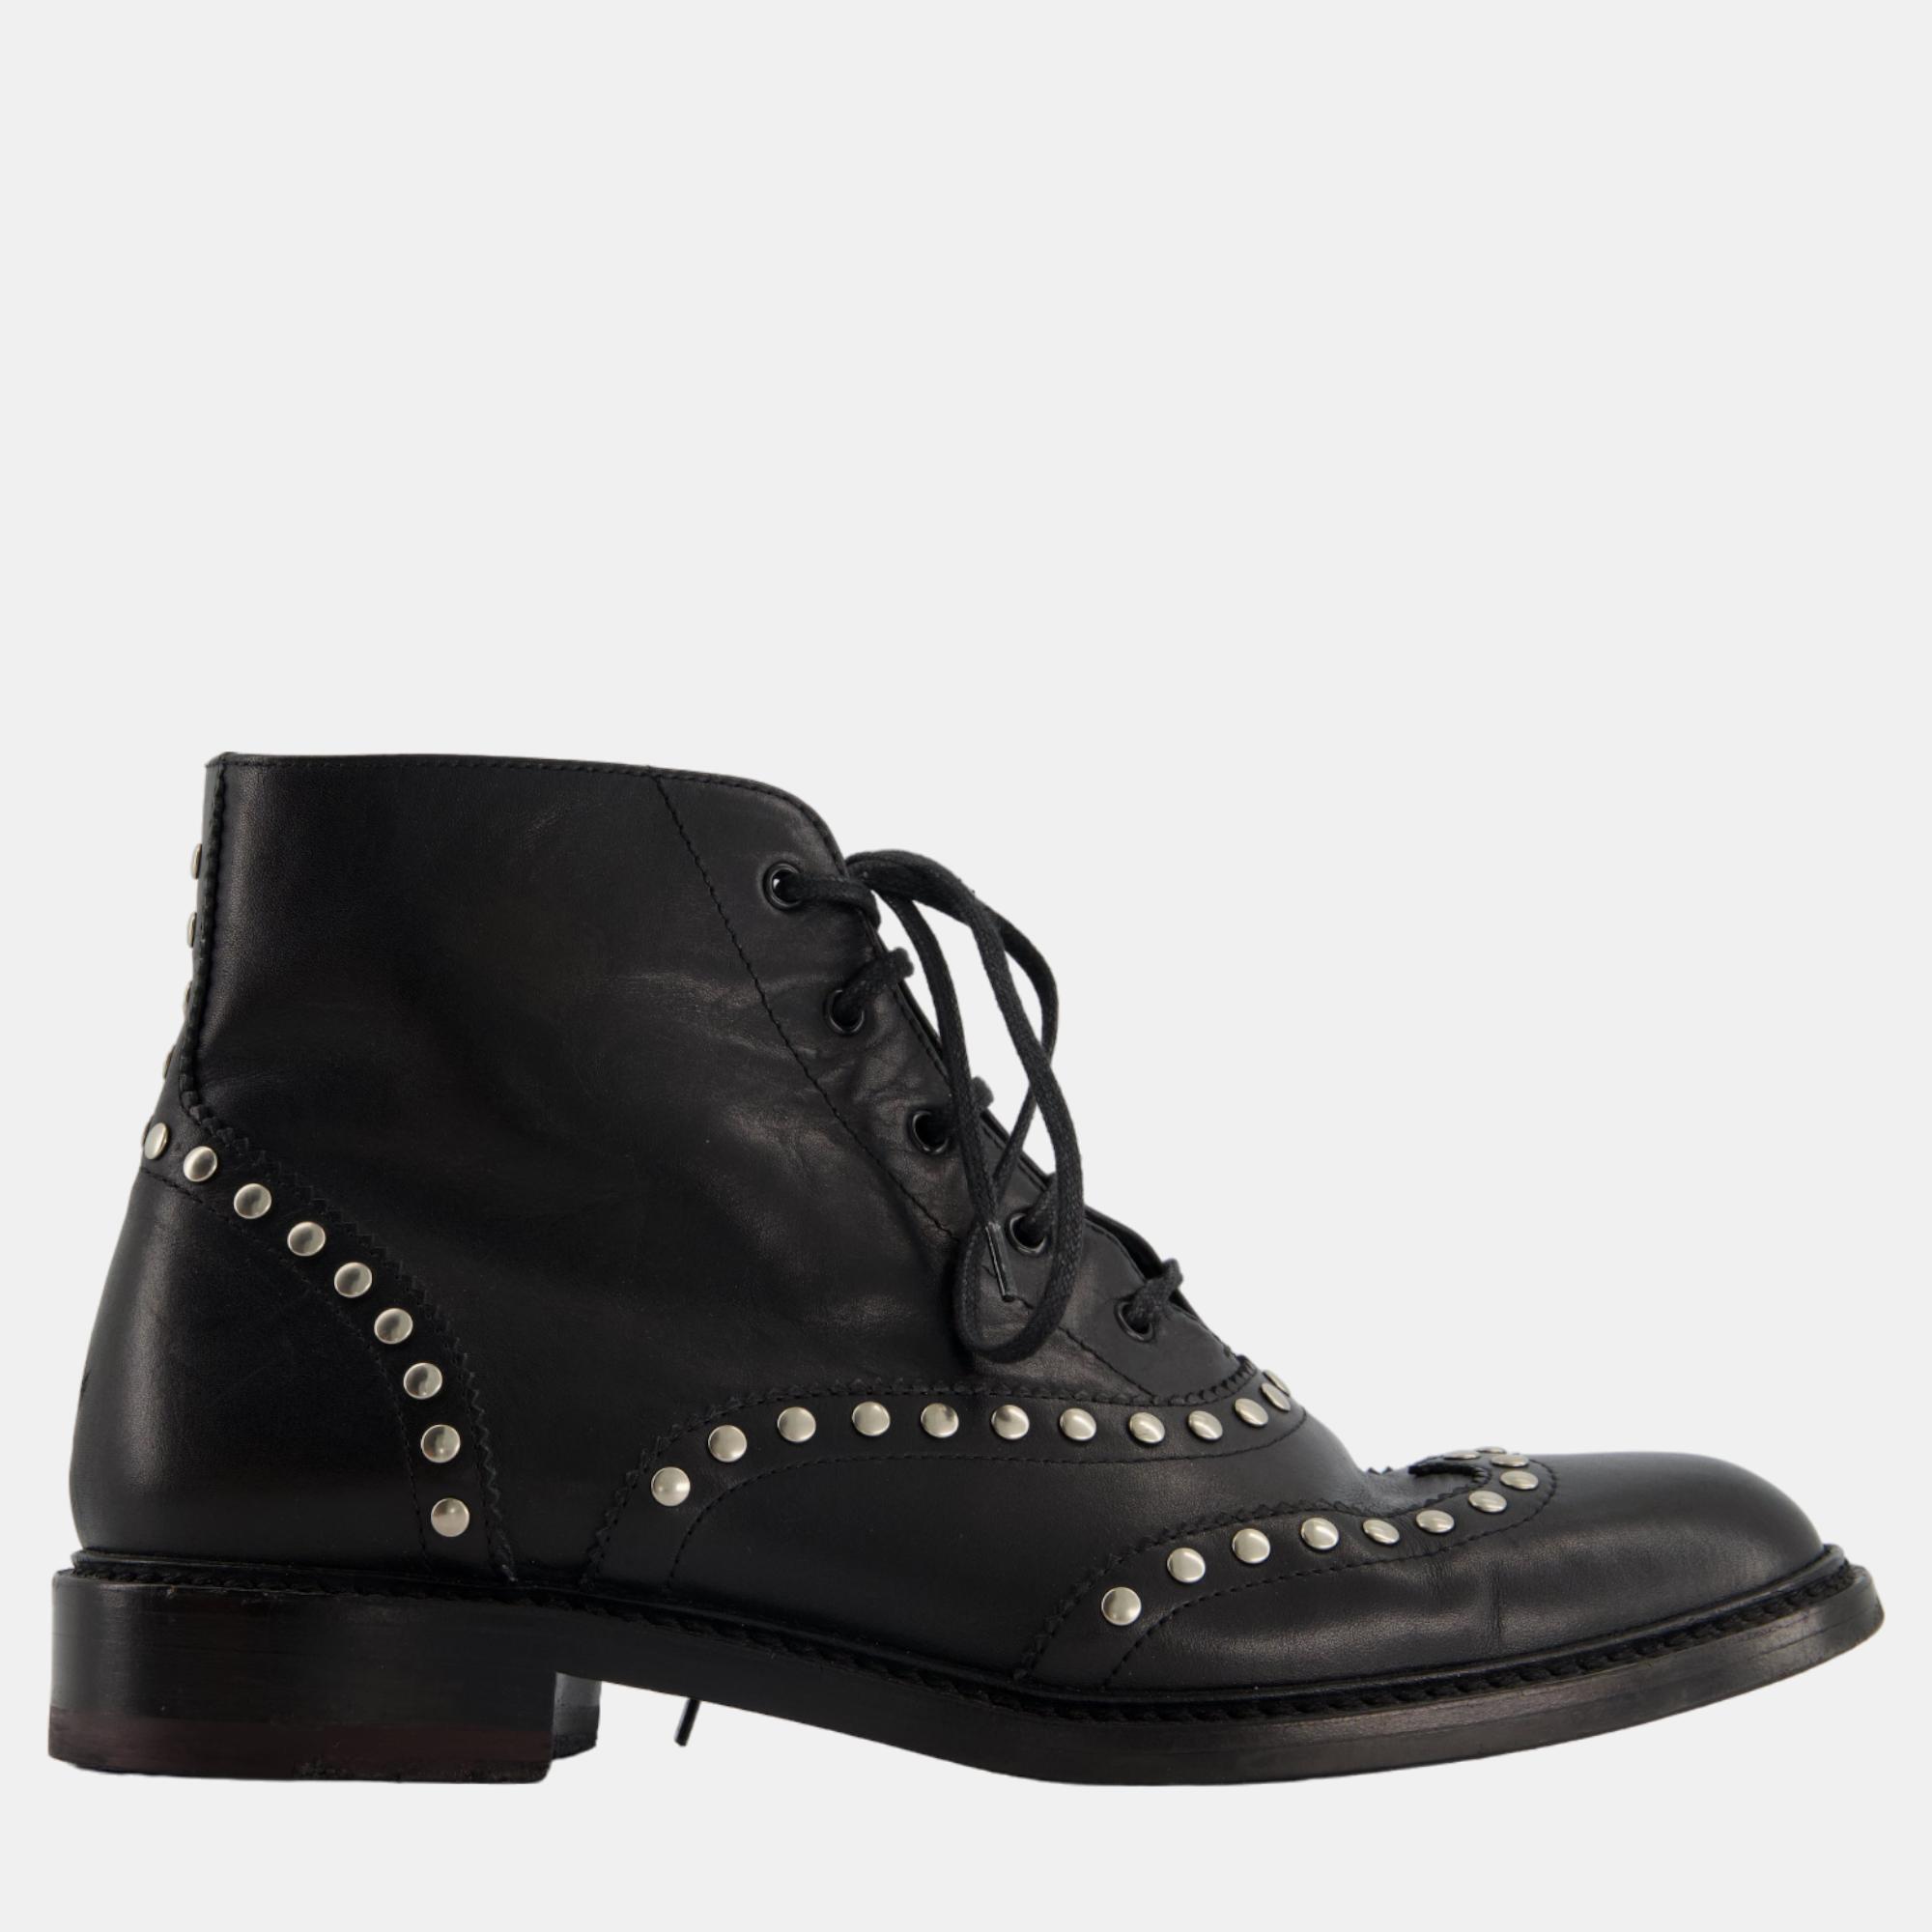 

Saint Laurent Black Leather Studded Ankle Boots Size EU